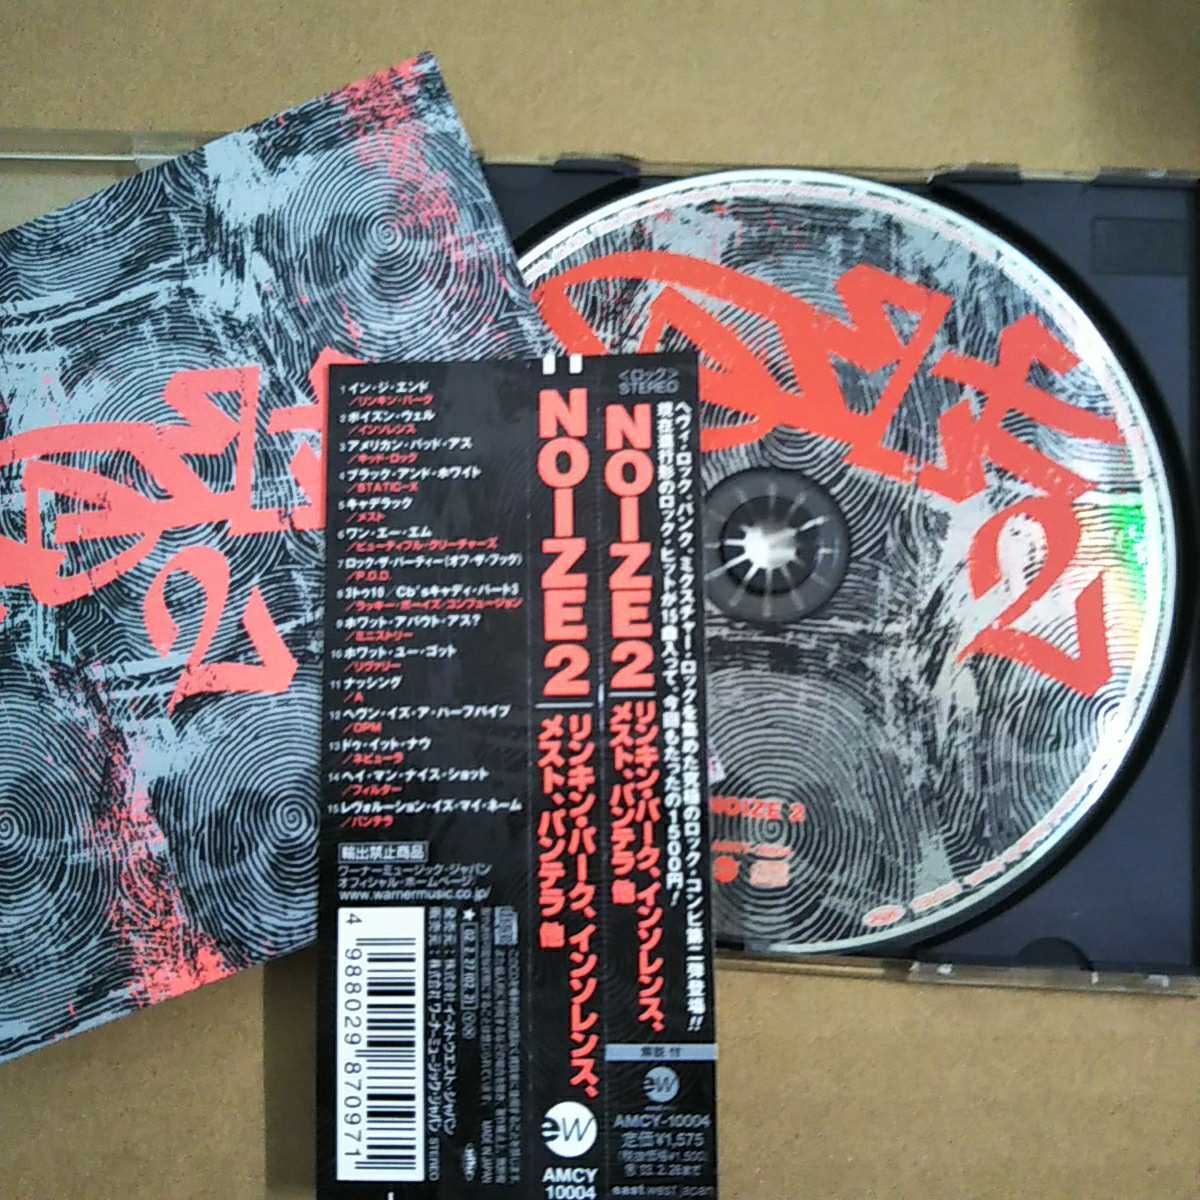 中古CD NOISE2 ロックオムニバス 国内盤/帯有り AMCY10004 リンキン・パーク パンテラ インソレンス メスト、他【1025】